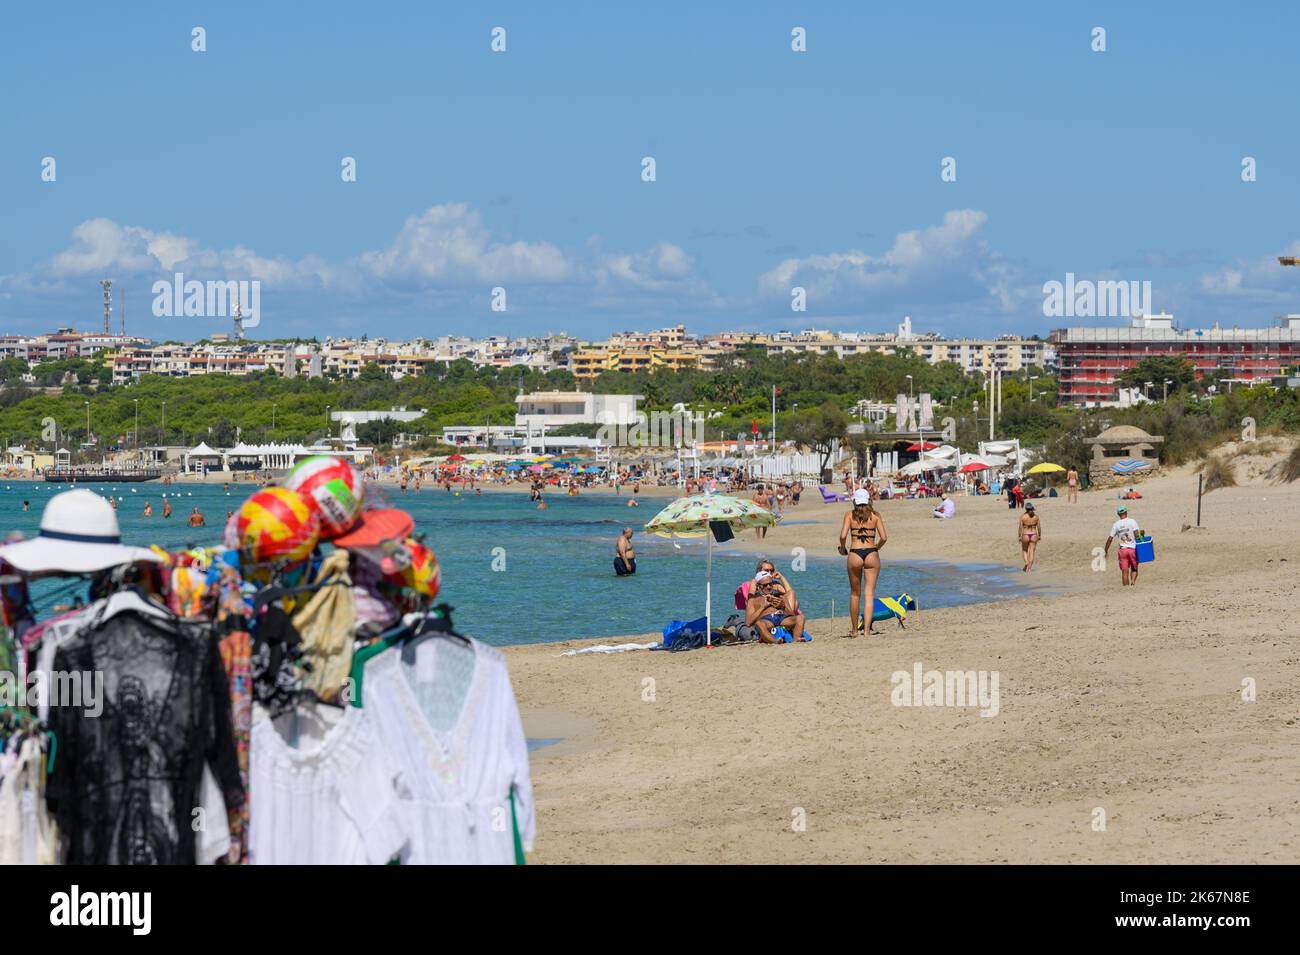 Vue de la plage de Sottovento vers Gallipoli avec les amateurs de plage, les baigneurs de soleil et les marchandises d'un vendeur de plage au premier plan. Pouilles (Puglia), Italie. Banque D'Images